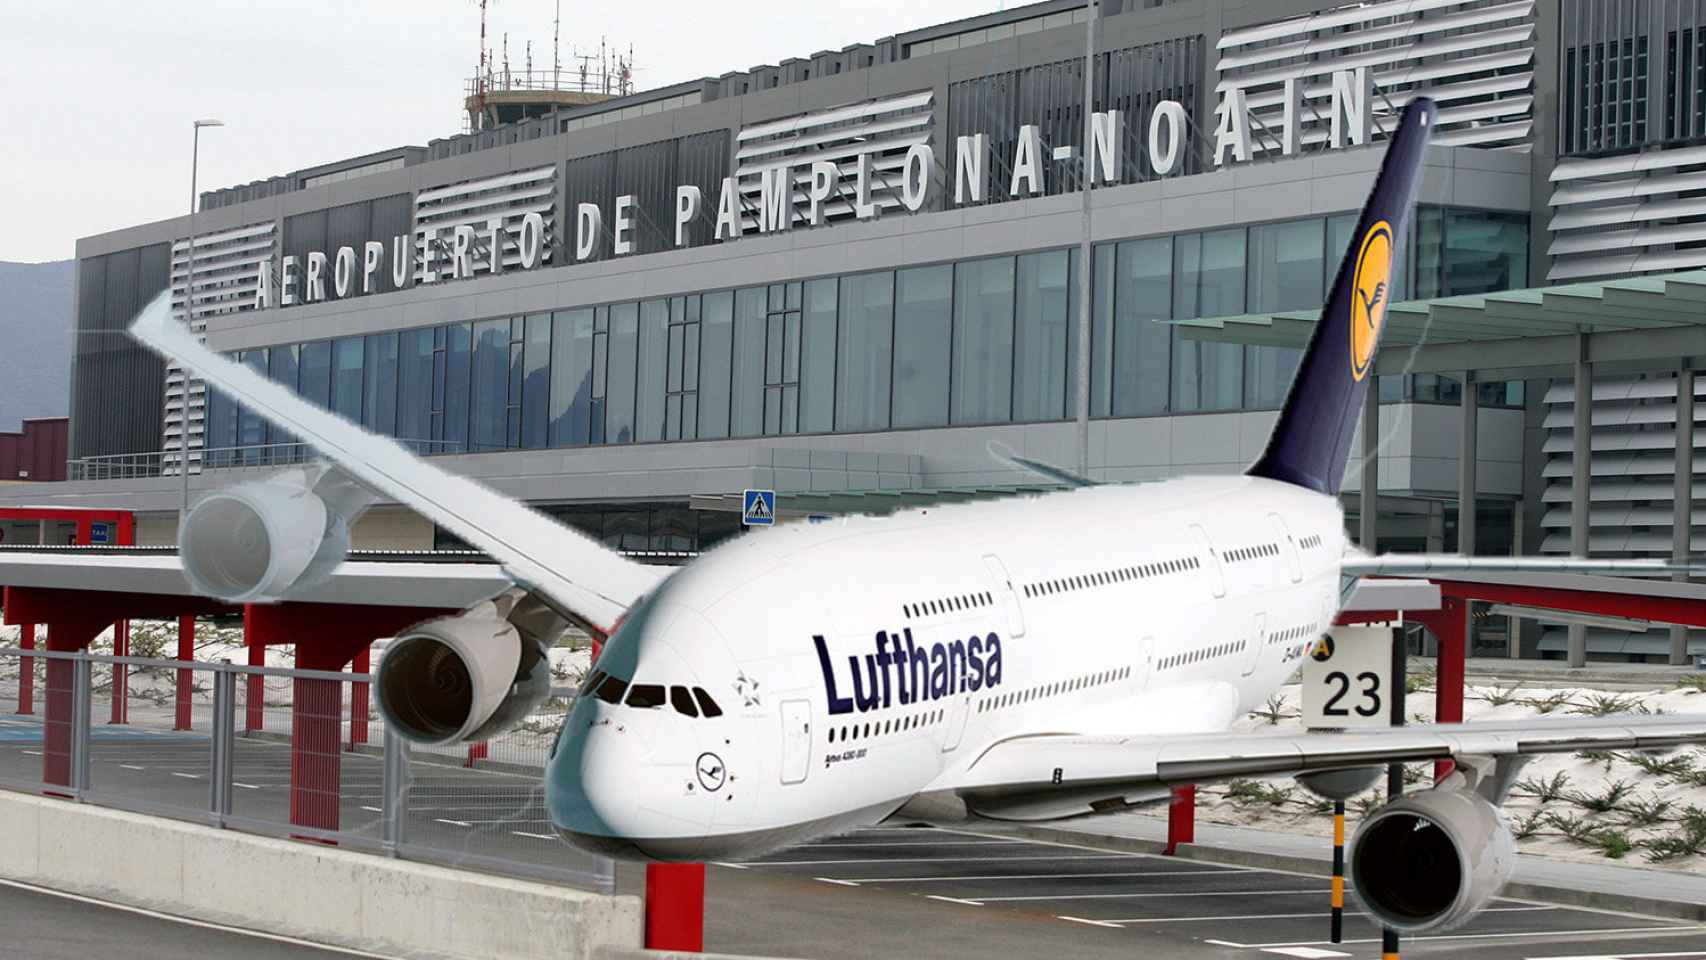 Un avión de la compañía alemana Lufthansa, que anuncia vuelos desde el aeropuerto de Noain-Pamplona.